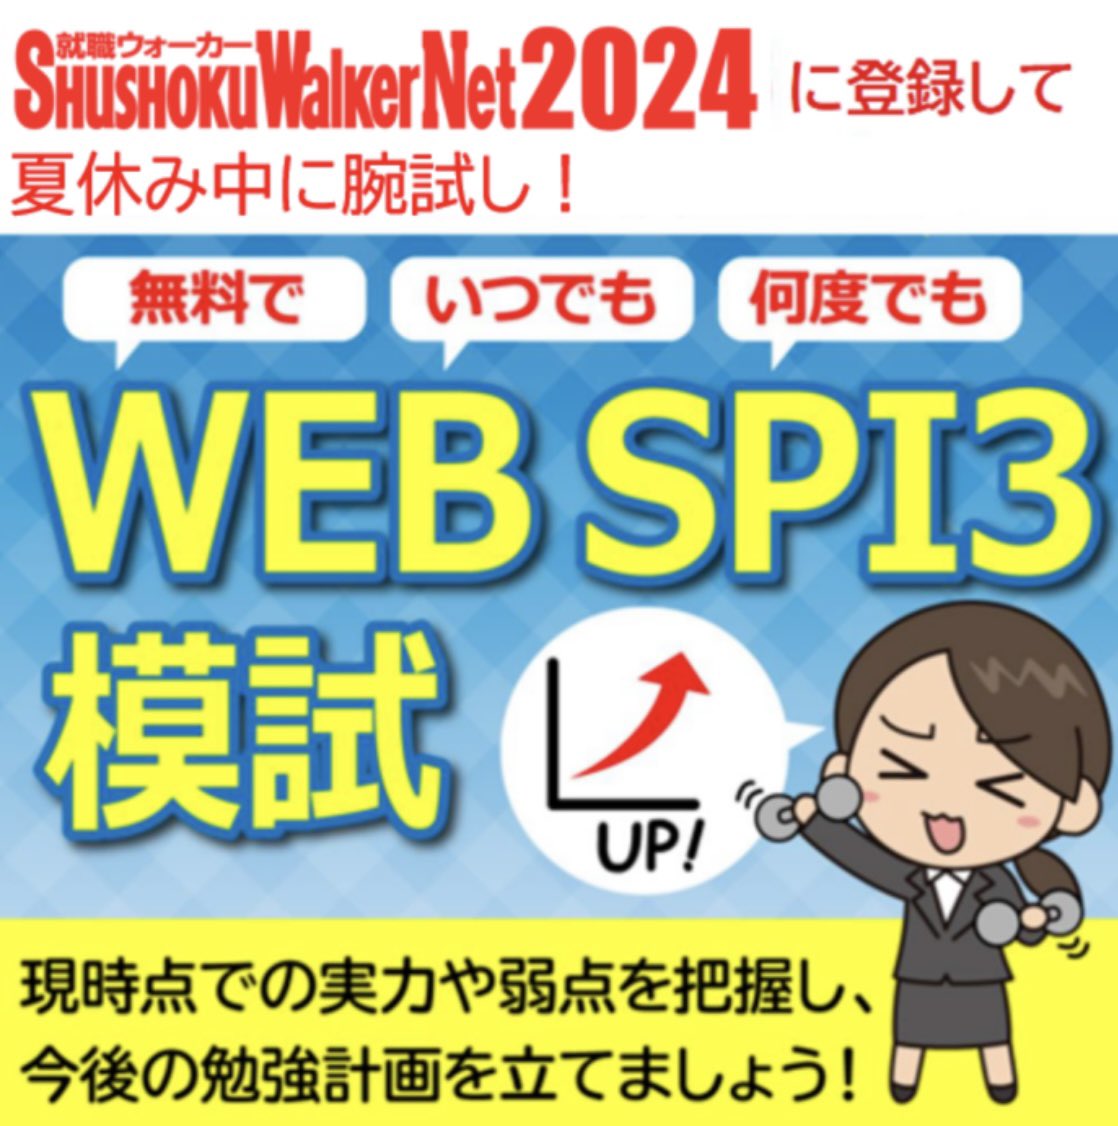 就職活動に欠かせないSPIの対策はバッチリですか❓

就職ウォーカーNet2024に登録すれば、本番さながらの「WEB SPI3模試」が、無料で受検し放題✨✏️

今の自分の実力を把握し、夏休みの間にしっかり対策しましょう‼️

s-walker.net/2024/contents/…

#24卒 #25卒 #就活 #就職活動 #早稲田 #早大